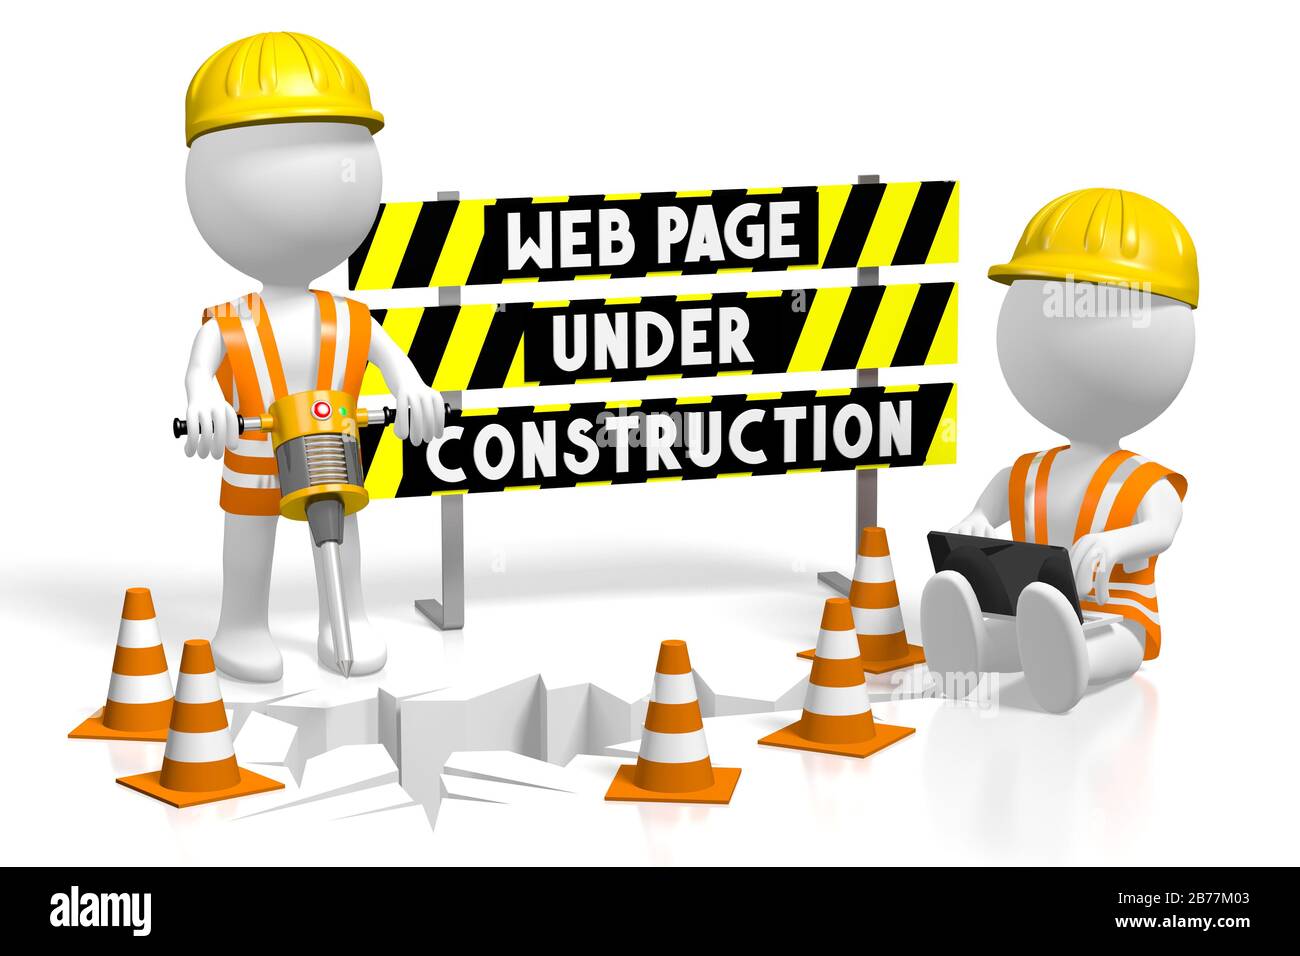 3D web page under construction concept Stock Photo